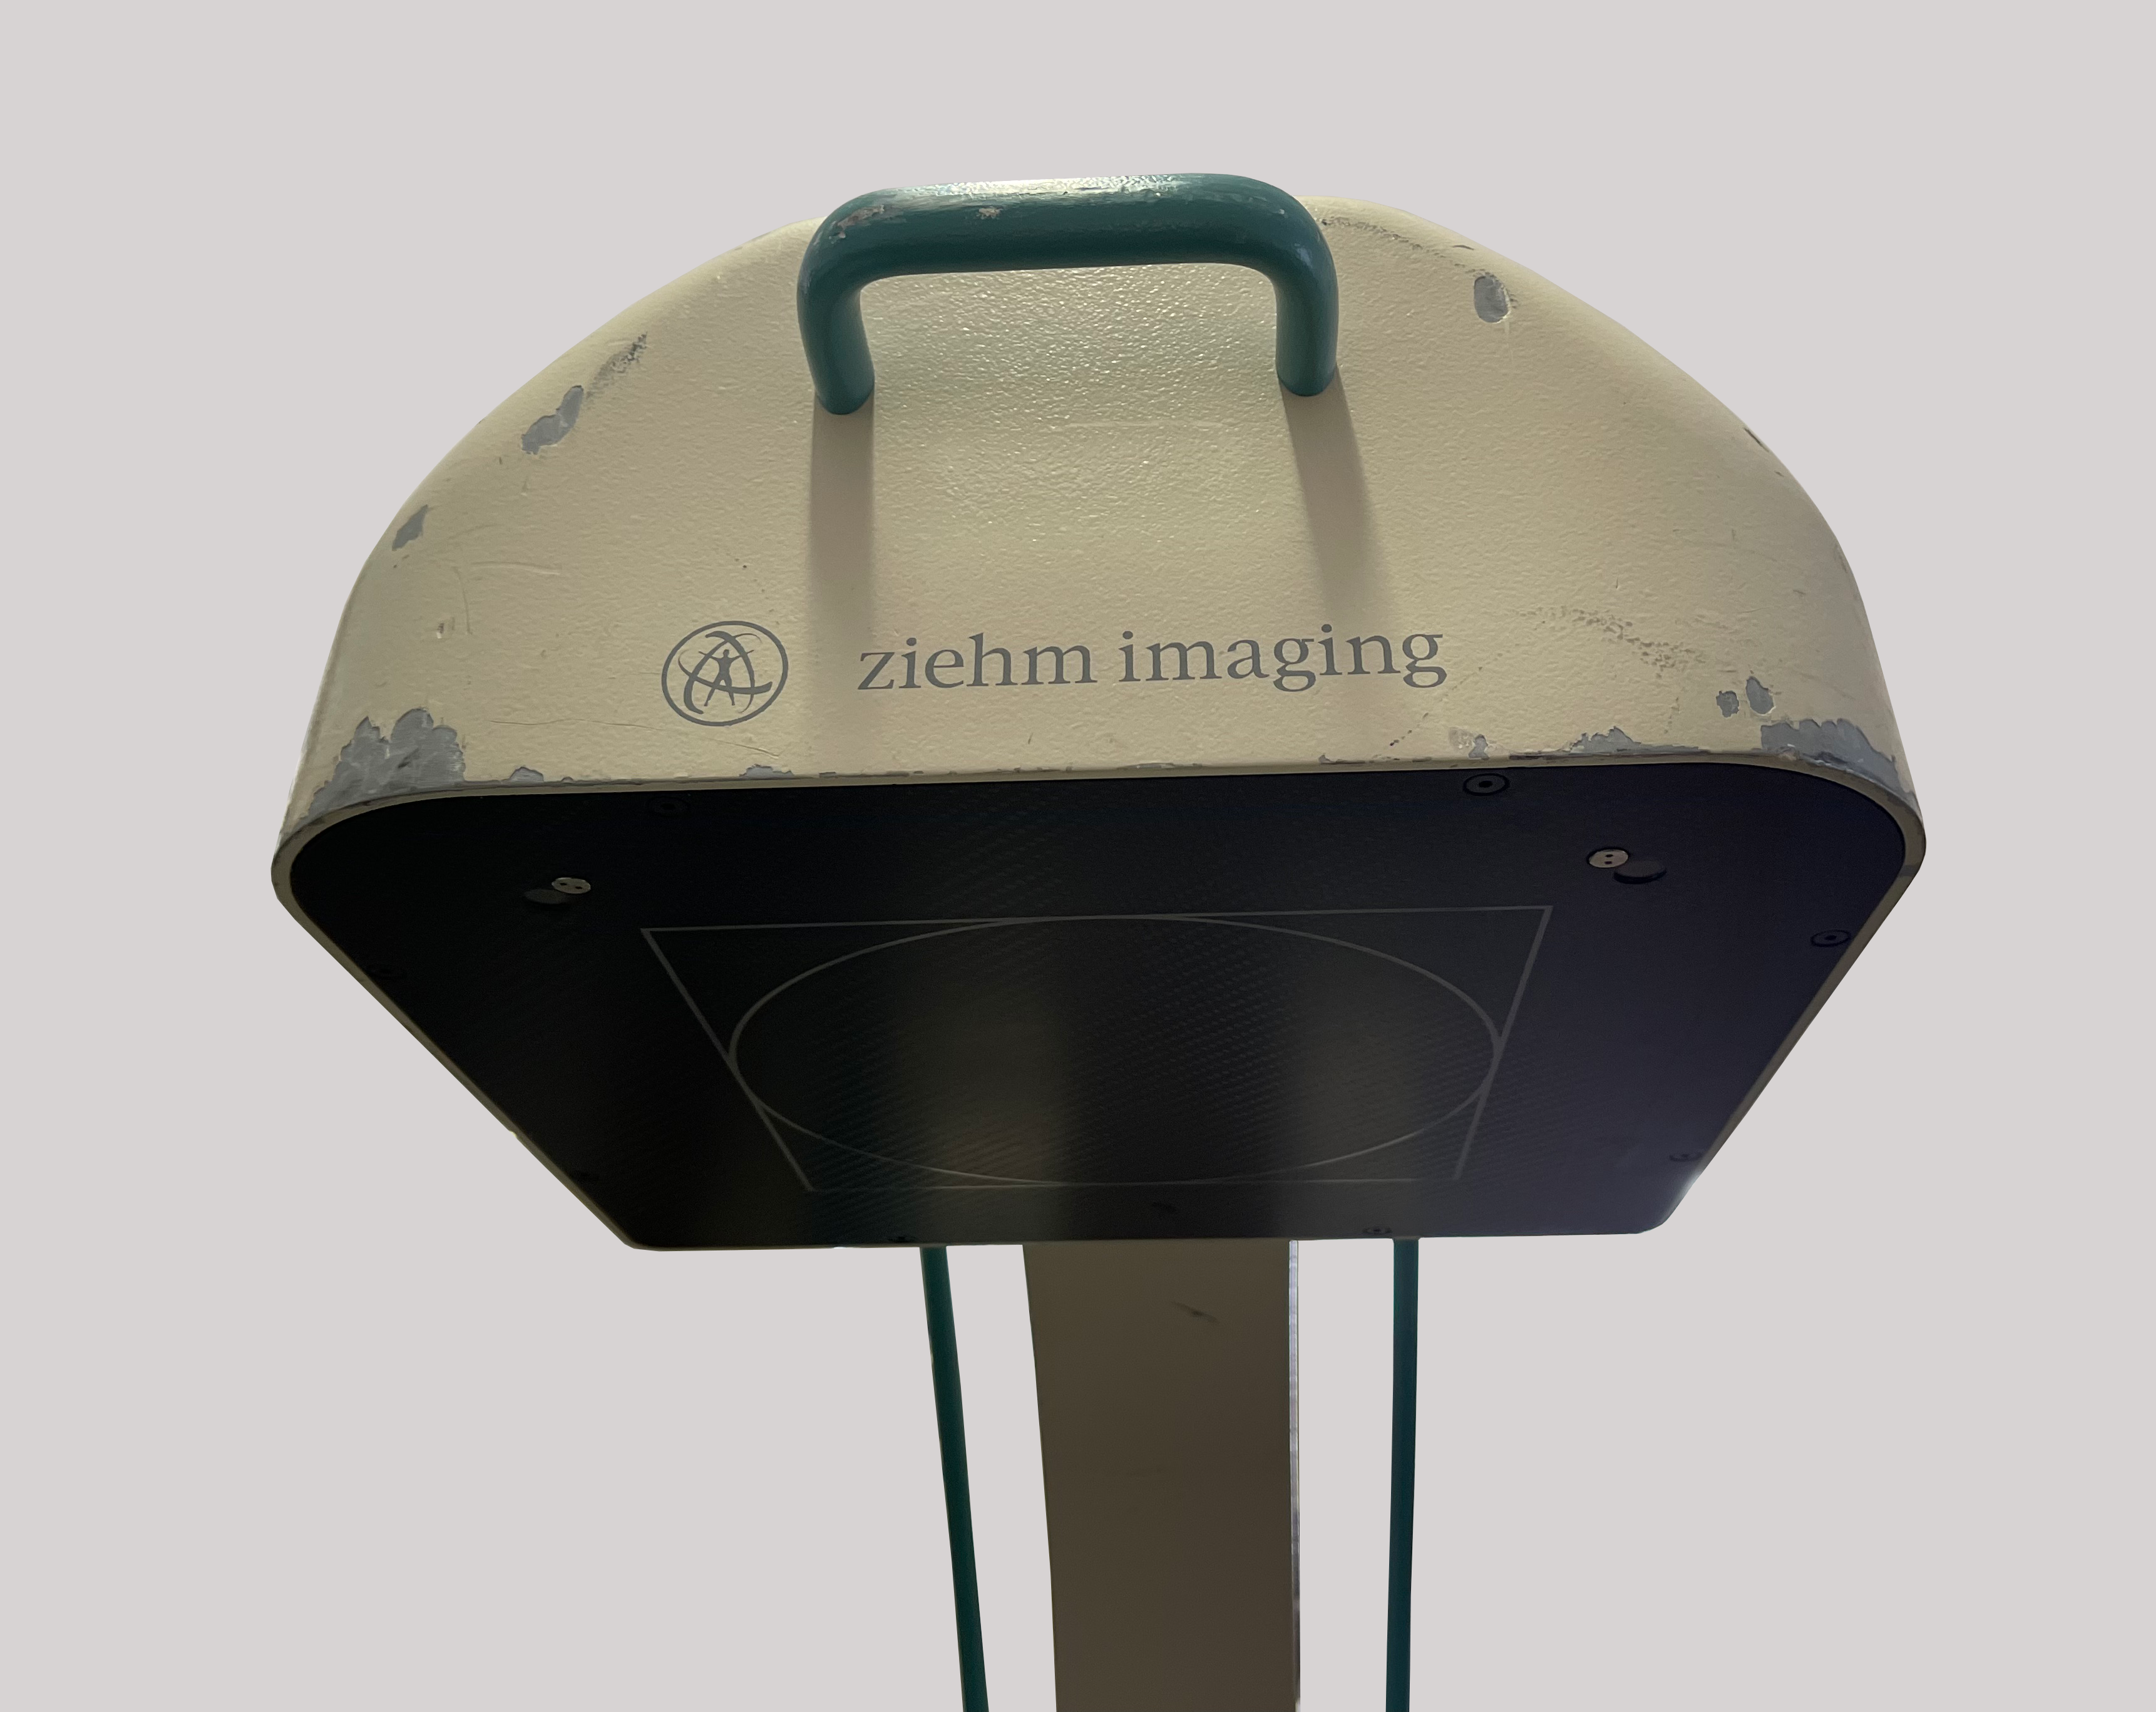 Ziehm Imaging Vision FD Vario 3D